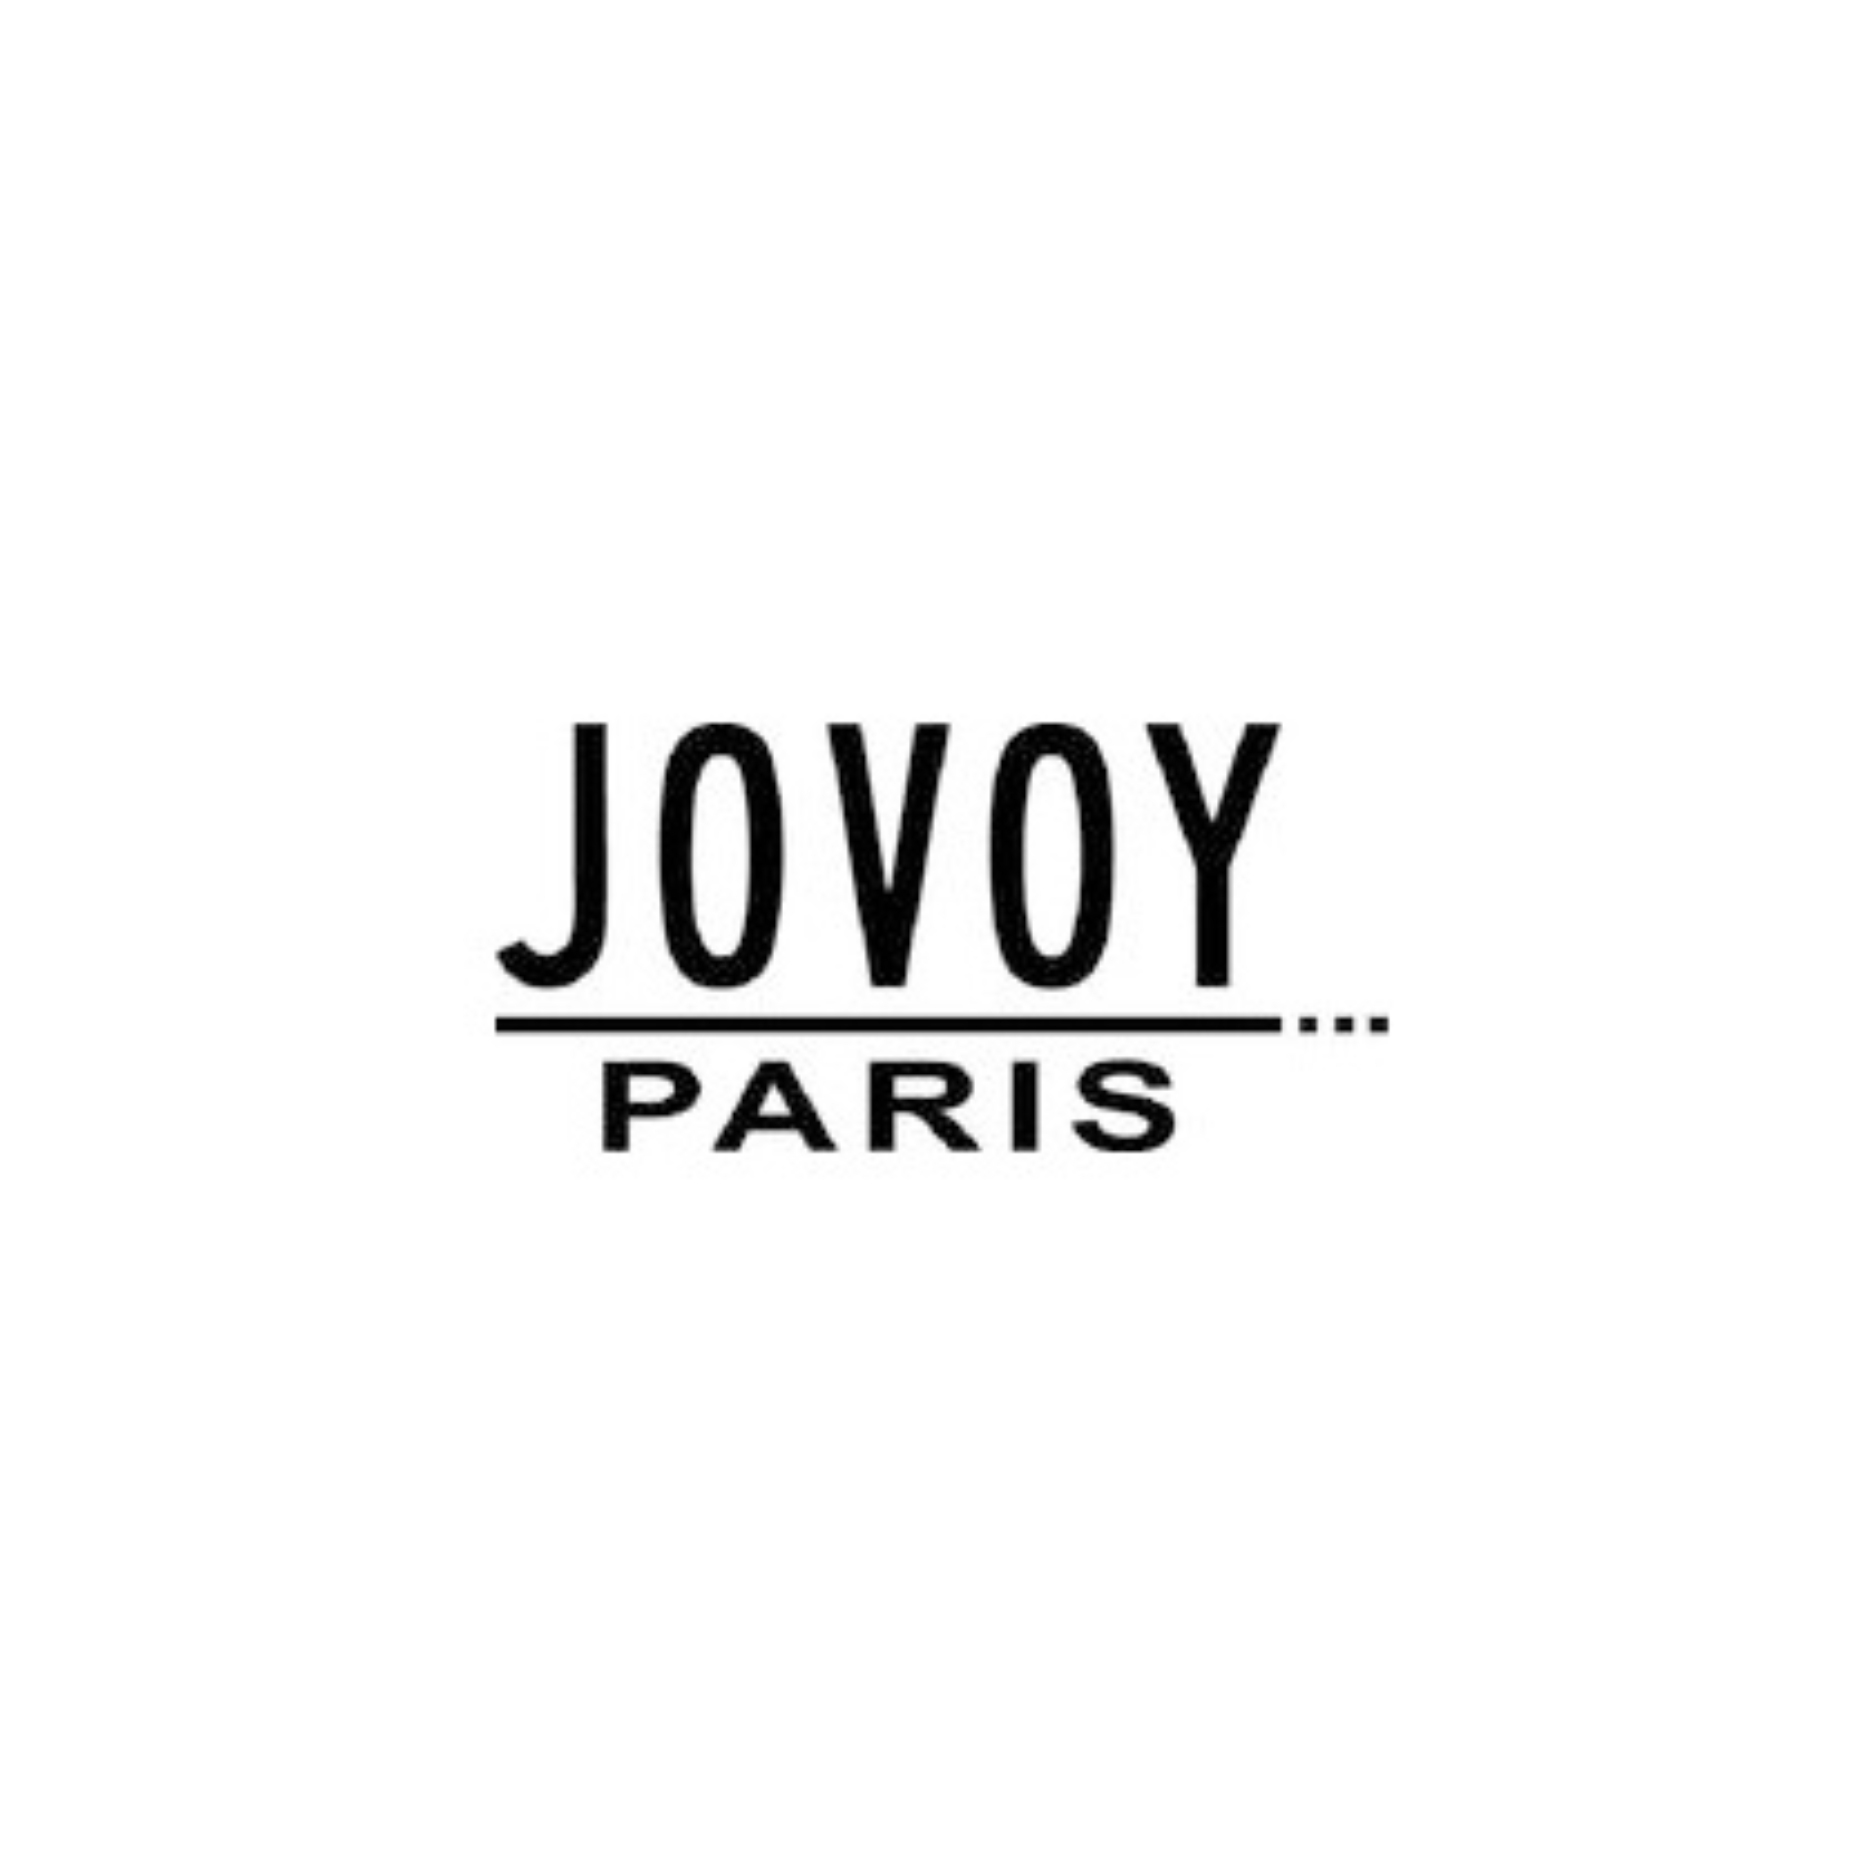 JOVOY PARIS